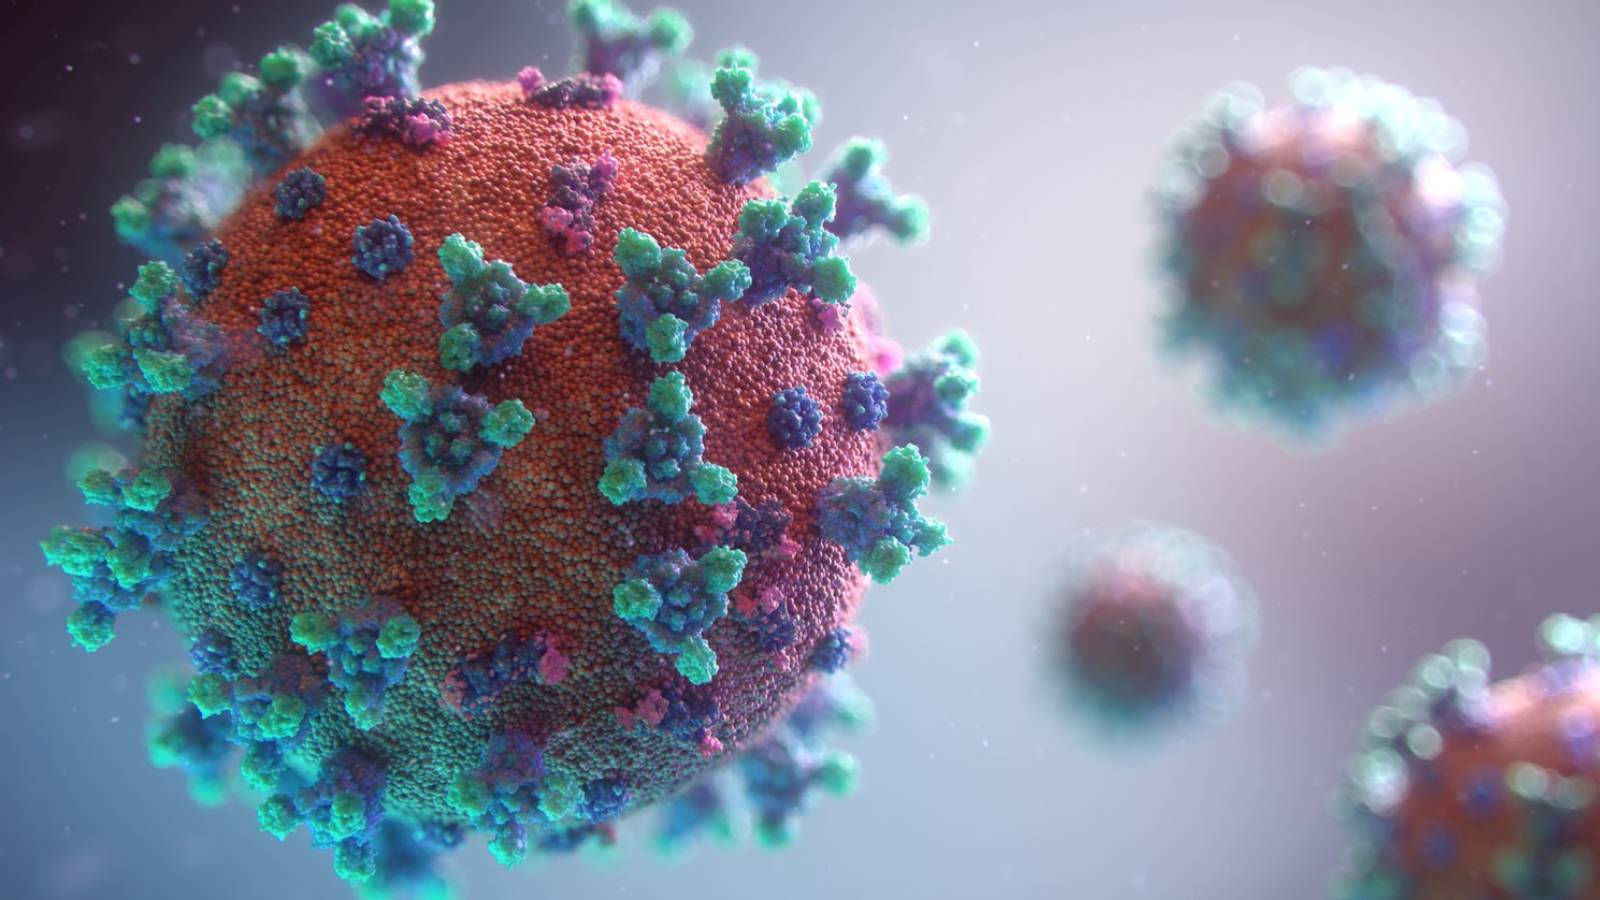 Romanian koronavirus Suuri määrä uusia tapauksia 15. elokuuta 2021